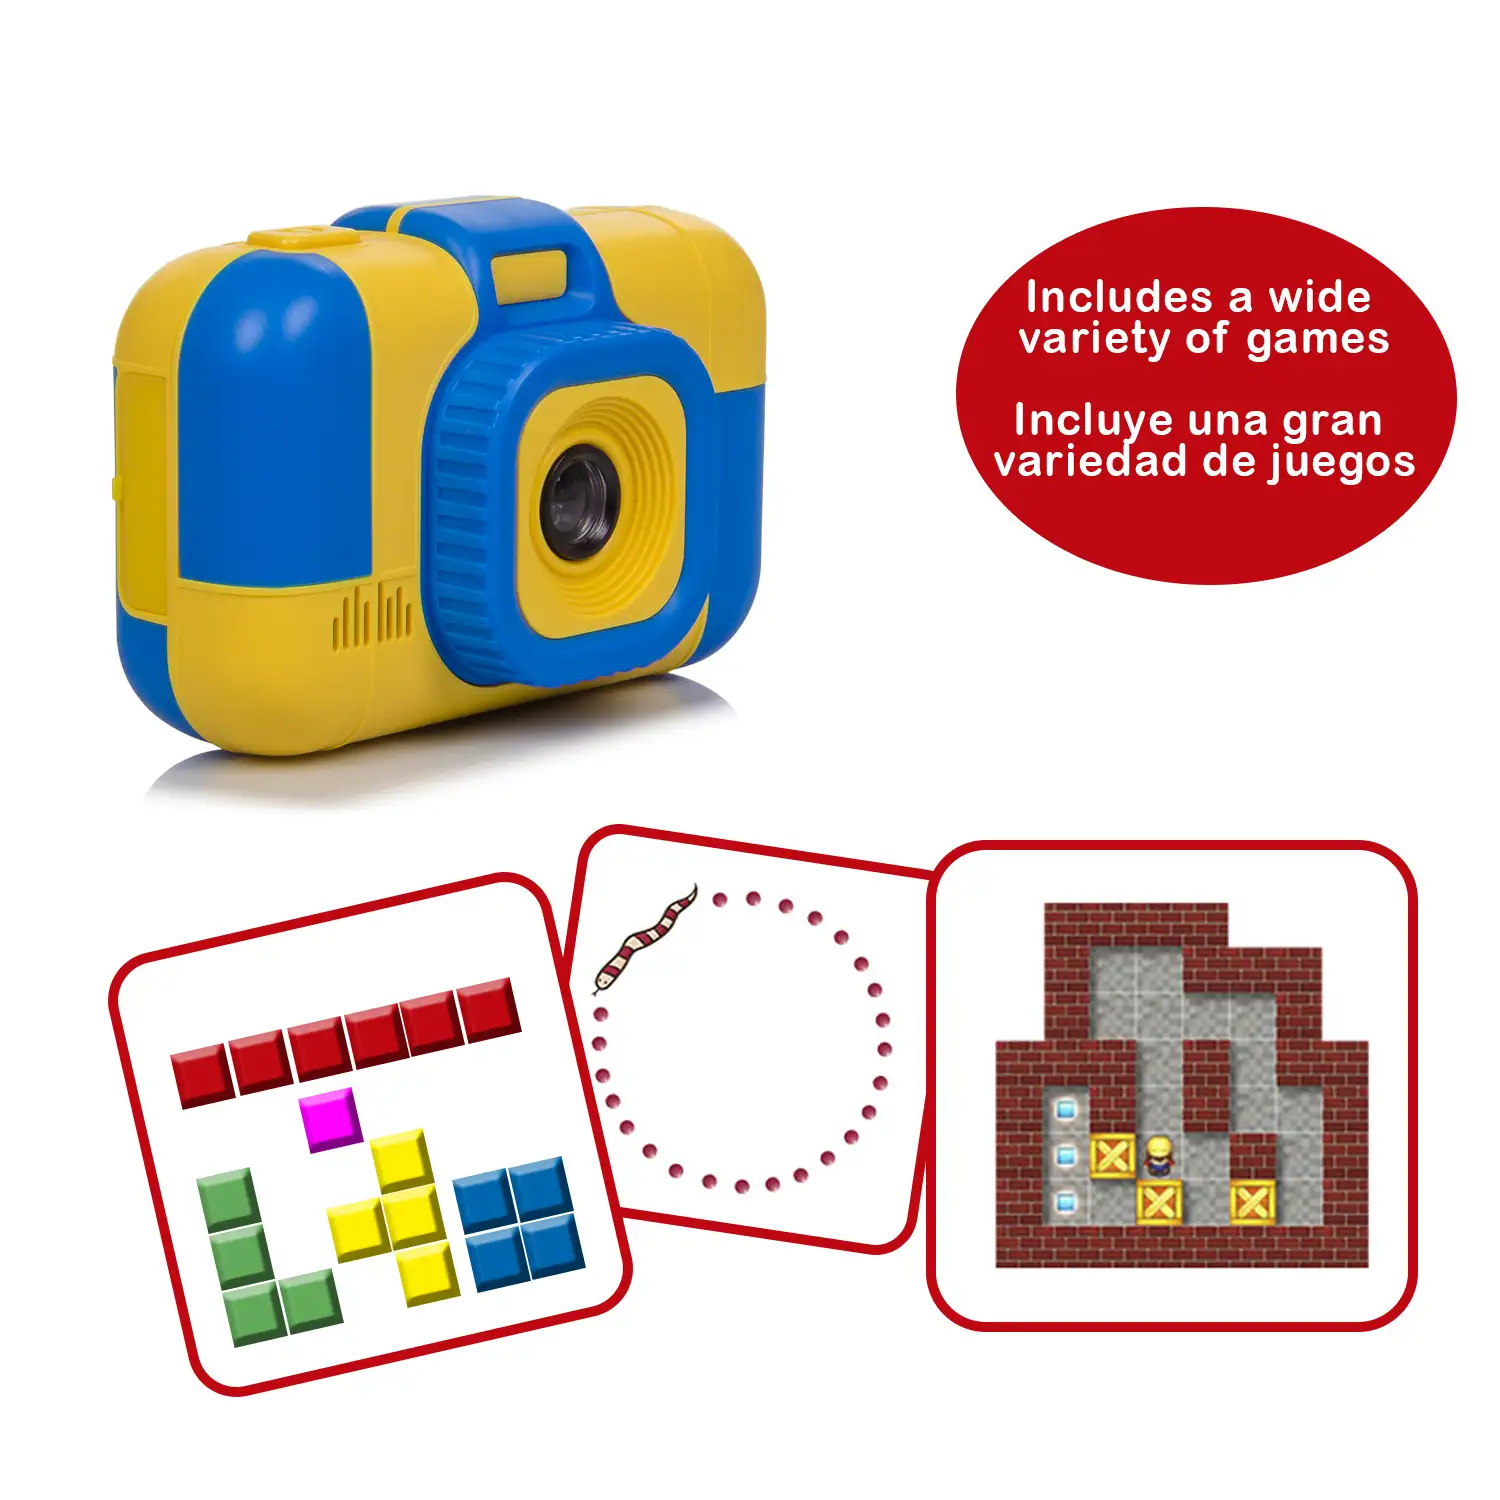 Cámara infantil L1 de fotos y video, con juegos incorporados.